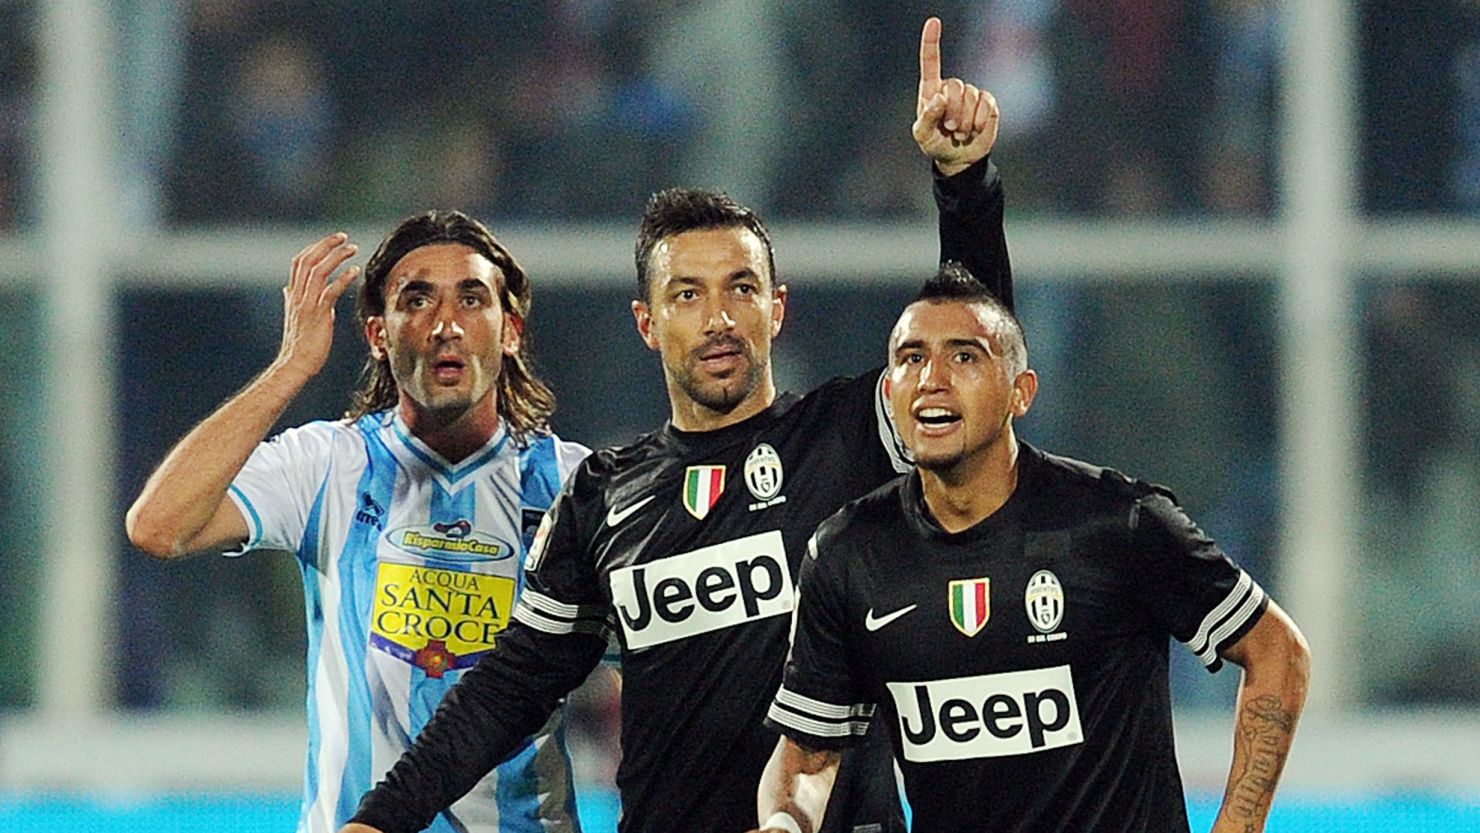 Fabio Quagliarella, center, celebrates after scoring Juventus' fifth goal in Saturday's 6-1 thrashing of Pescara.